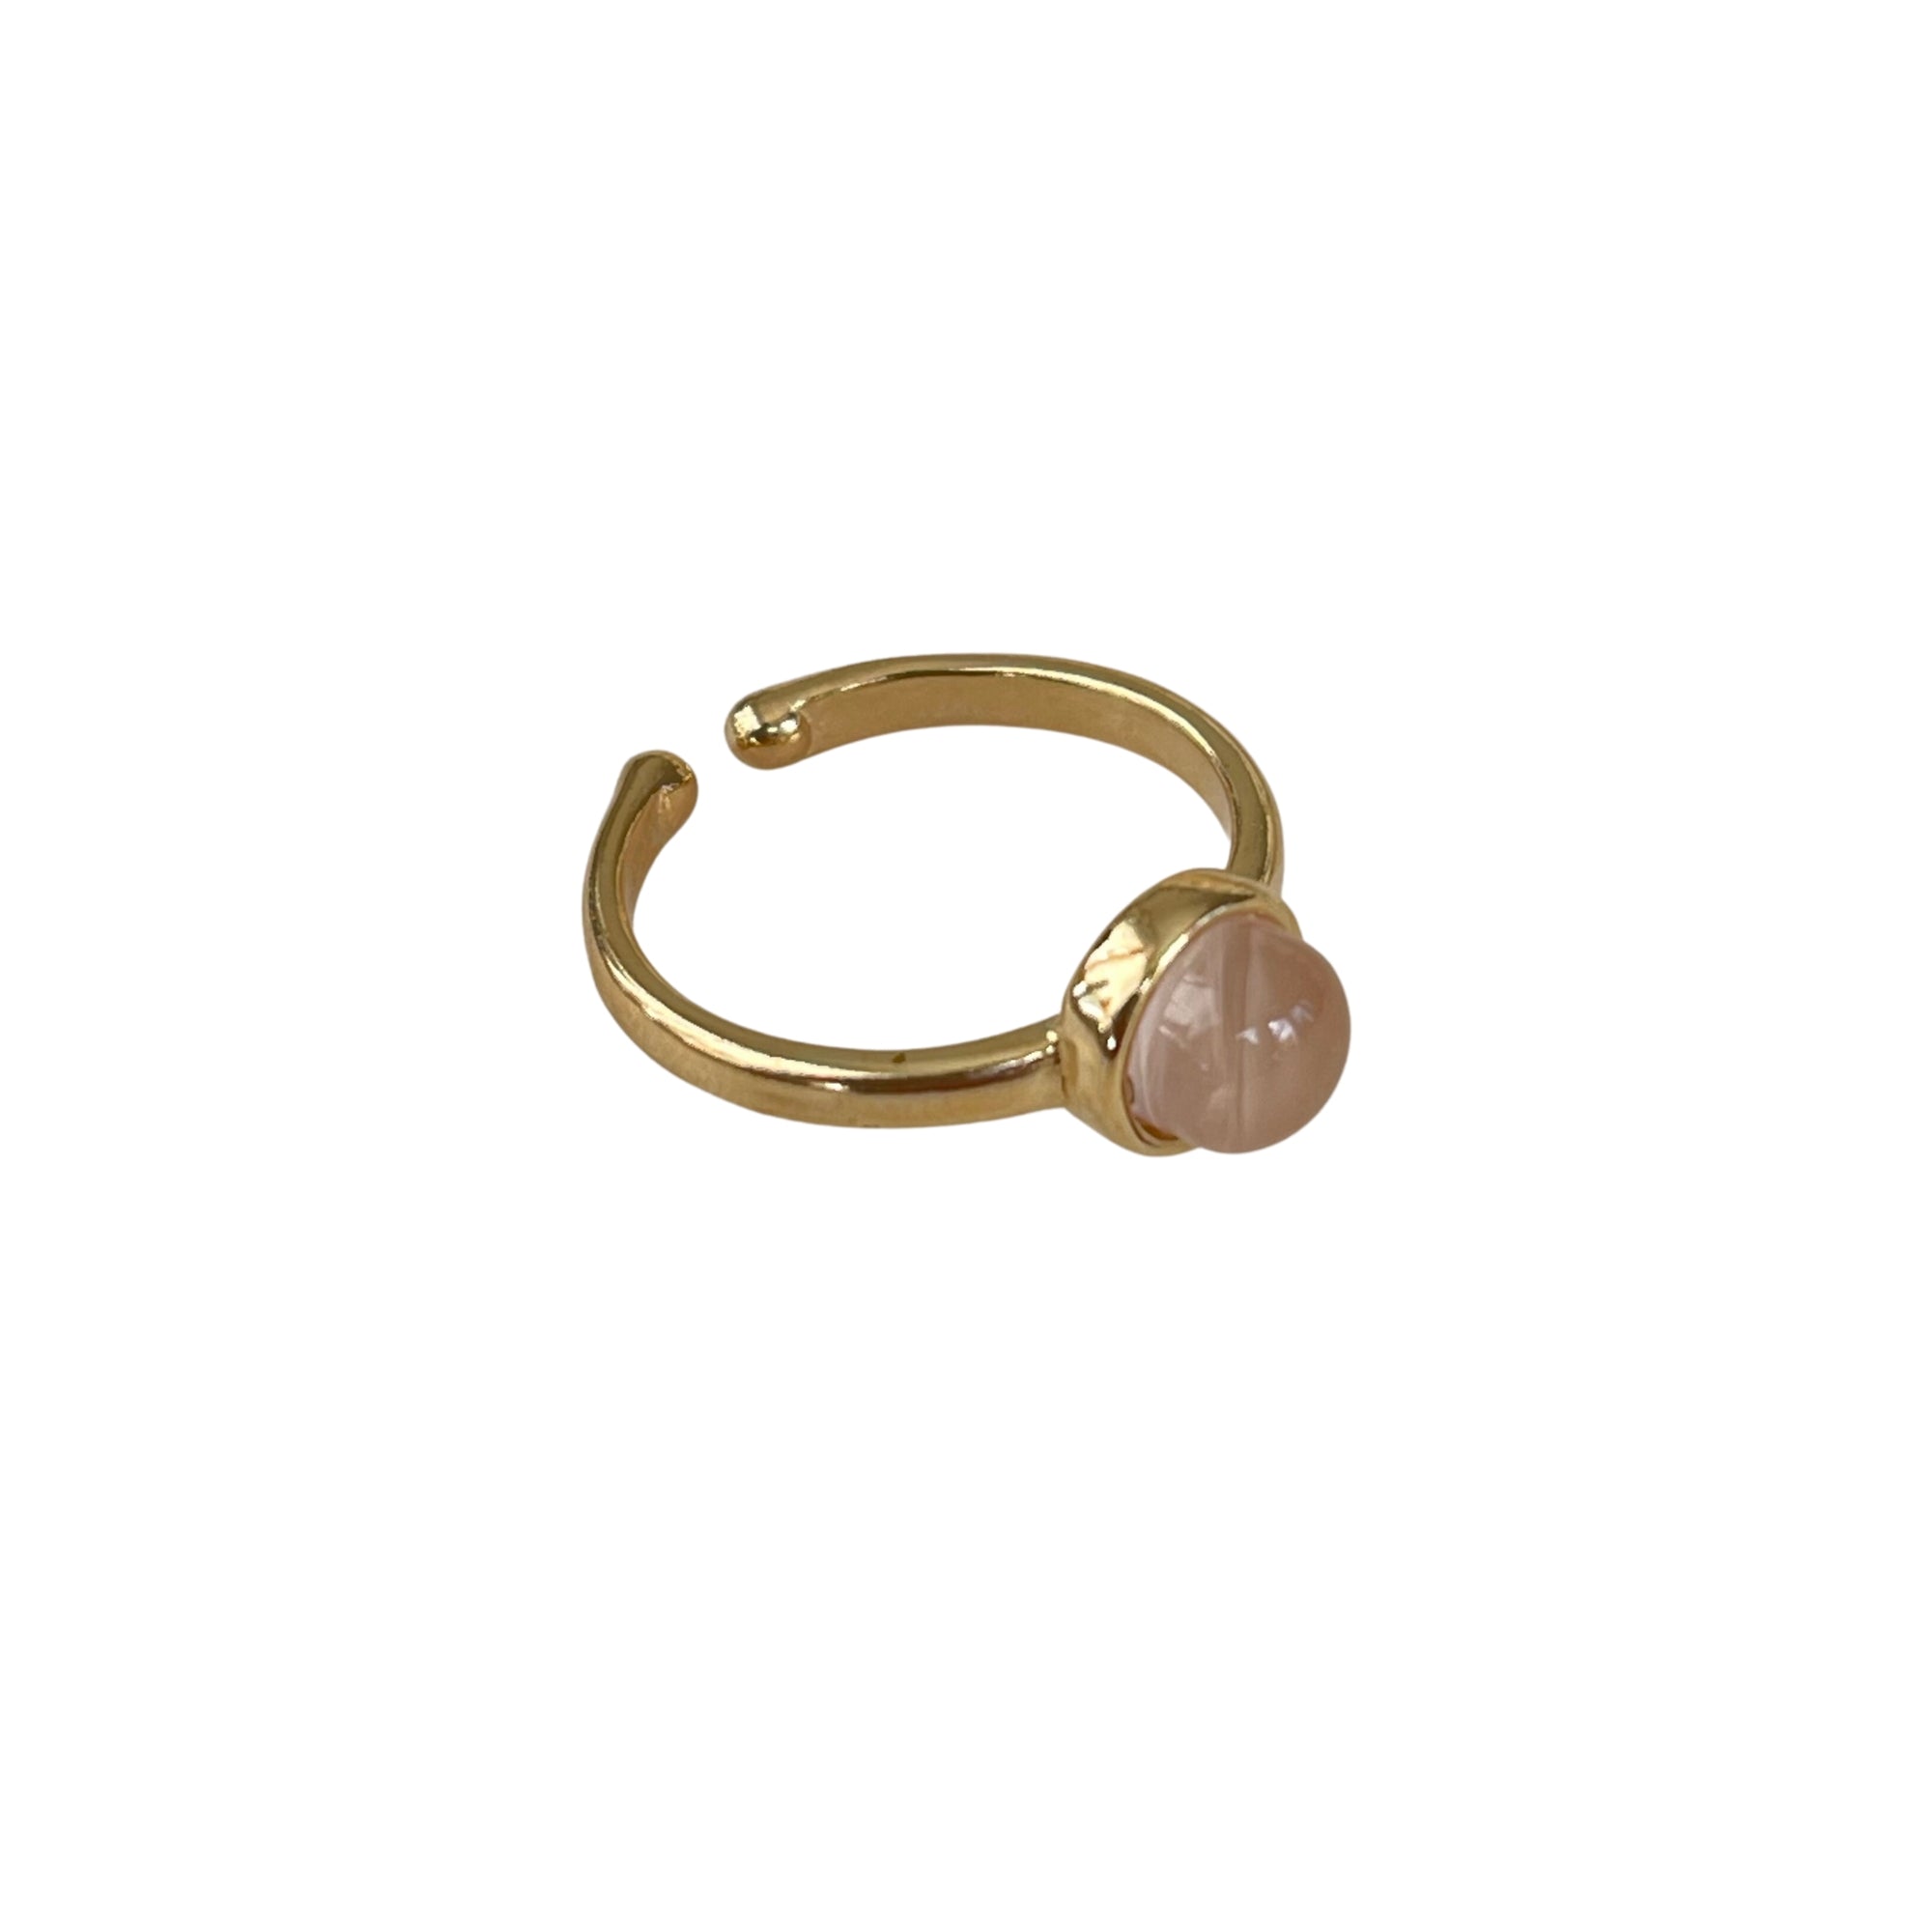  Der vergoldete Ring "ADRIANA" mit Achat in 18 K Ausführung ist ein elegantes Schmuckstück.  Ein offener Ring in strahlendem Grün. Verstellbar.  Hergestellt aus hochwertigem 18 K vergoldetem Messing mit faszinierendem Achat